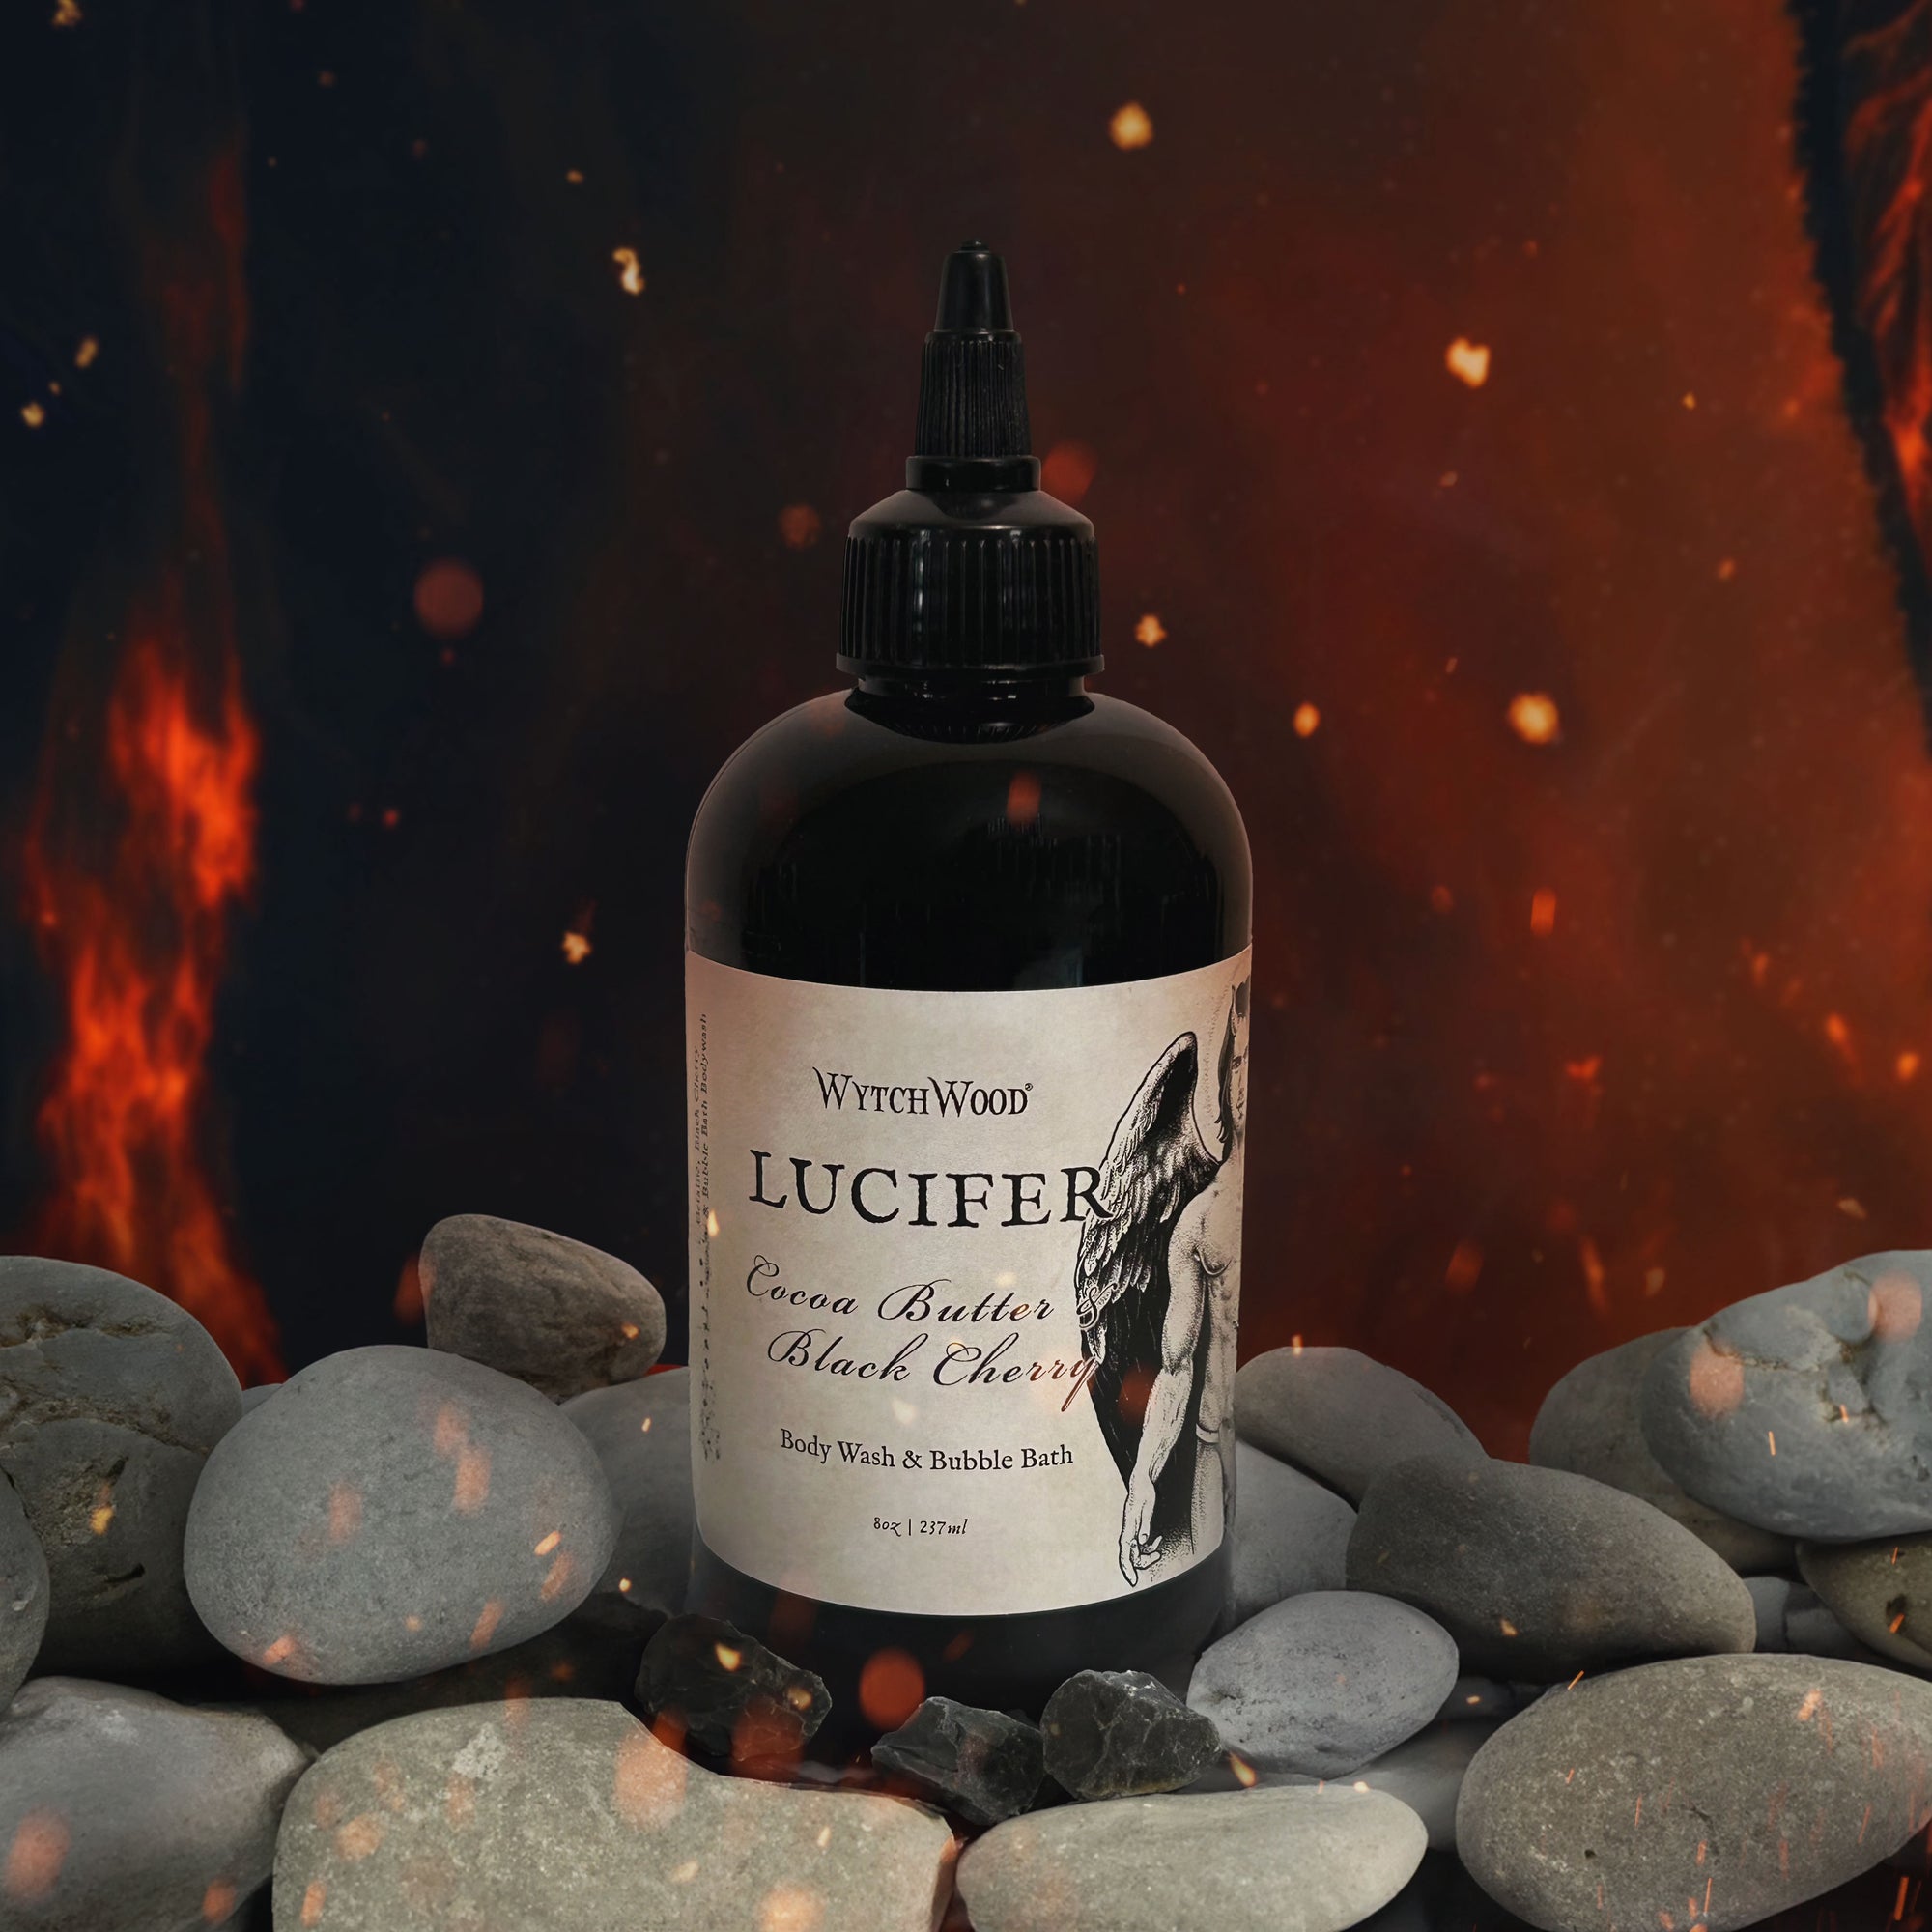 WytchWood's Lucifer Body Wash & Bubble Bath